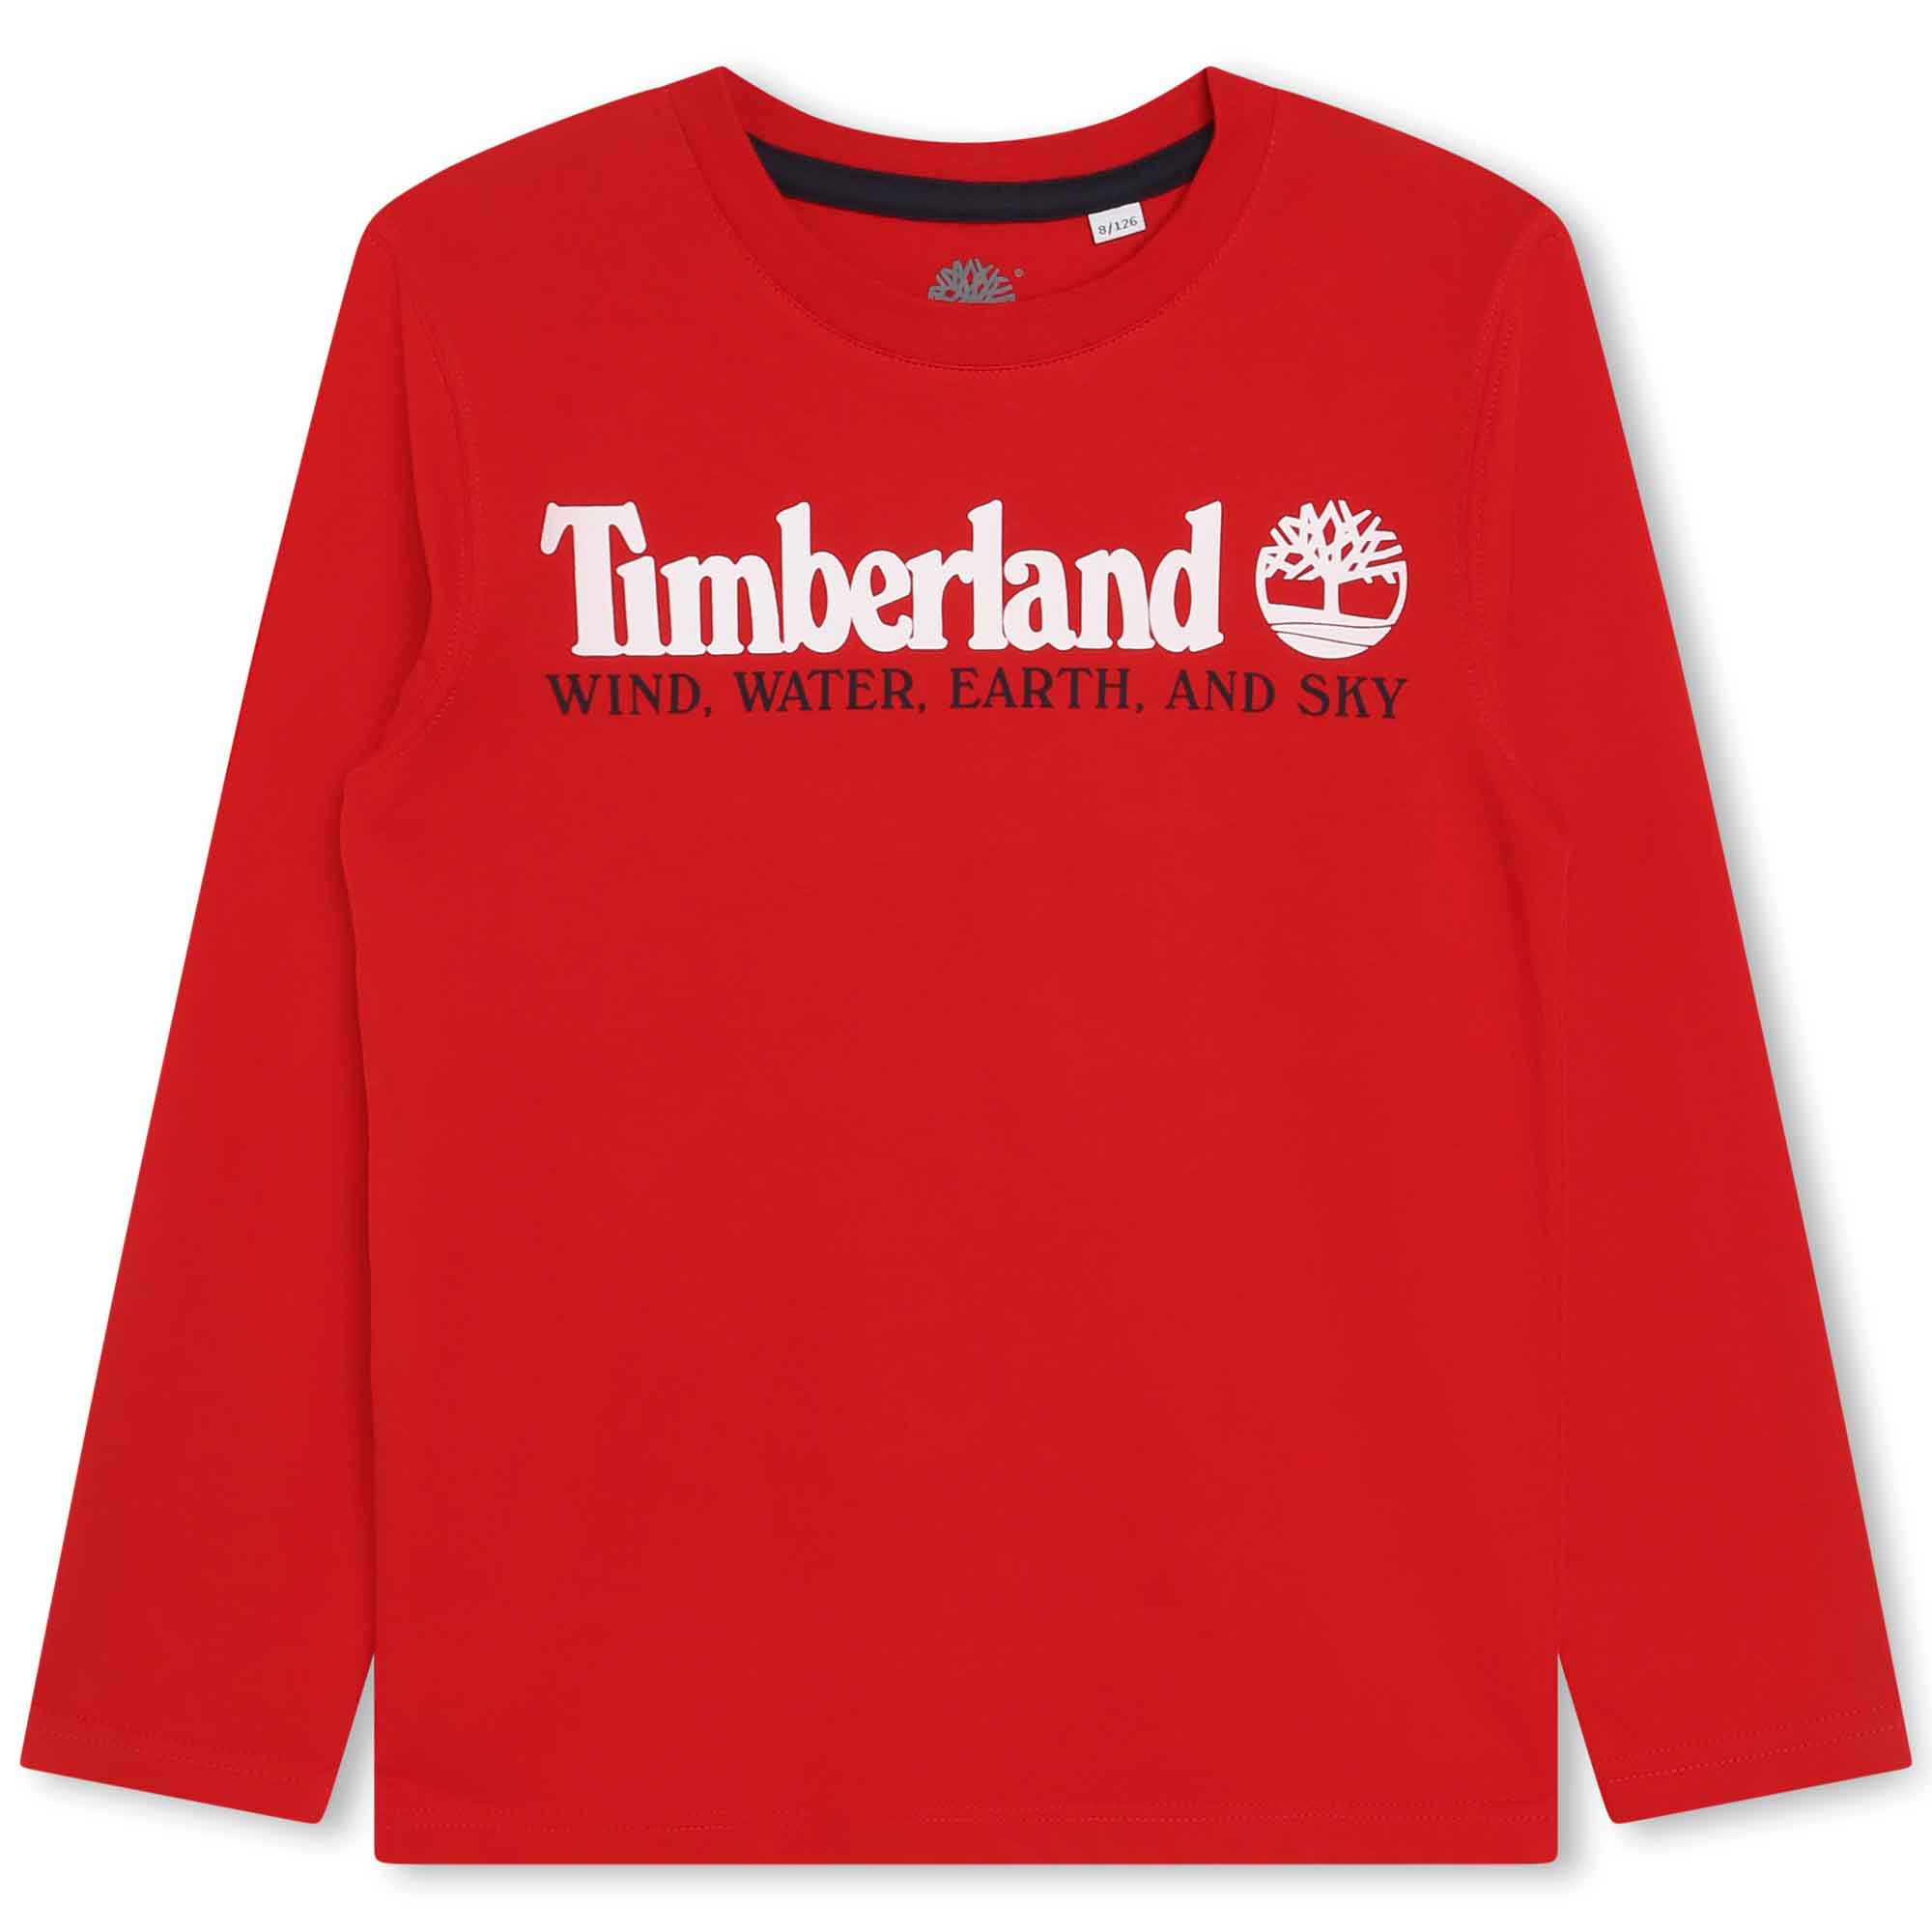 Langarm-Shirt mit Print TIMBERLAND Für JUNGE